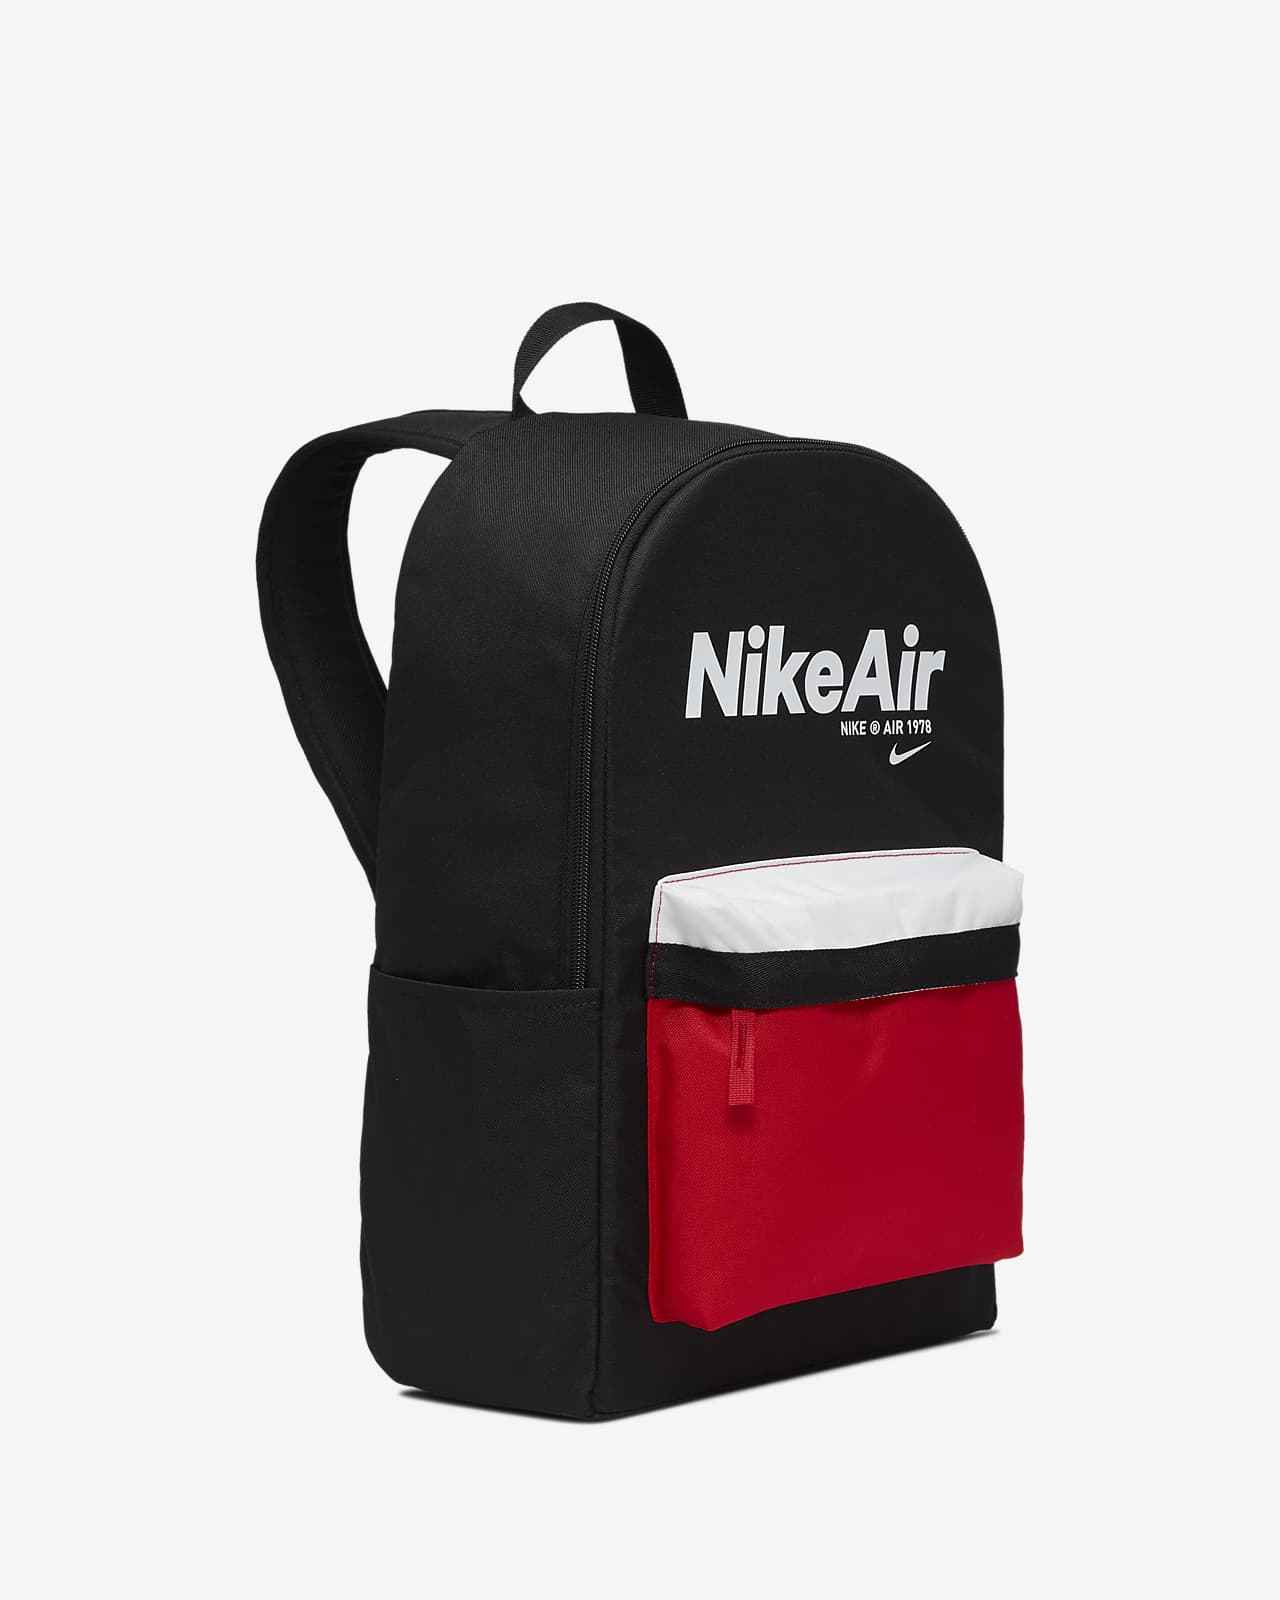 nike air 1978 backpack